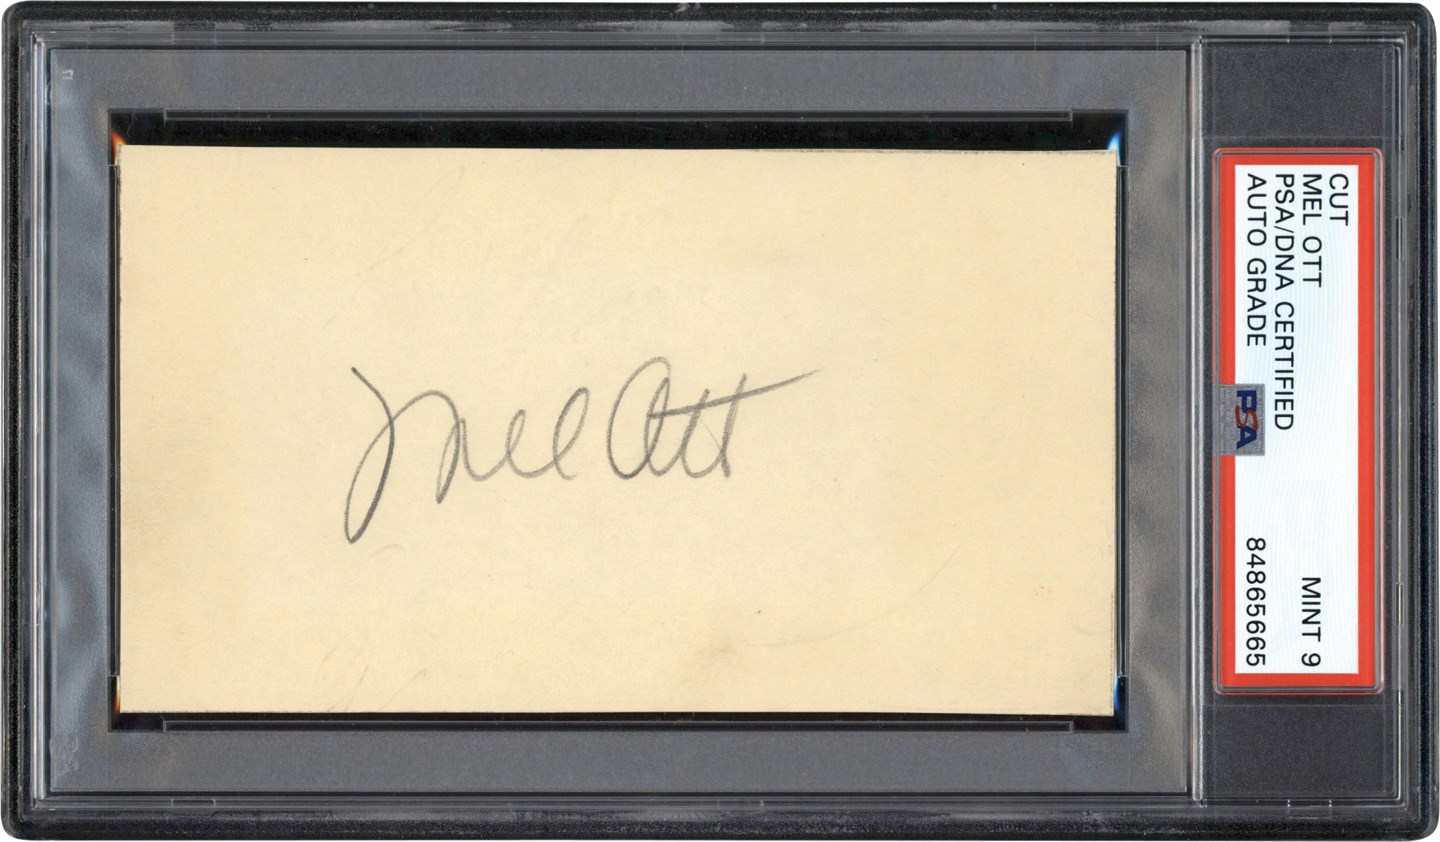 Baseball Autographs - Mel Ott Signature (PSA MINT 9 Auto)